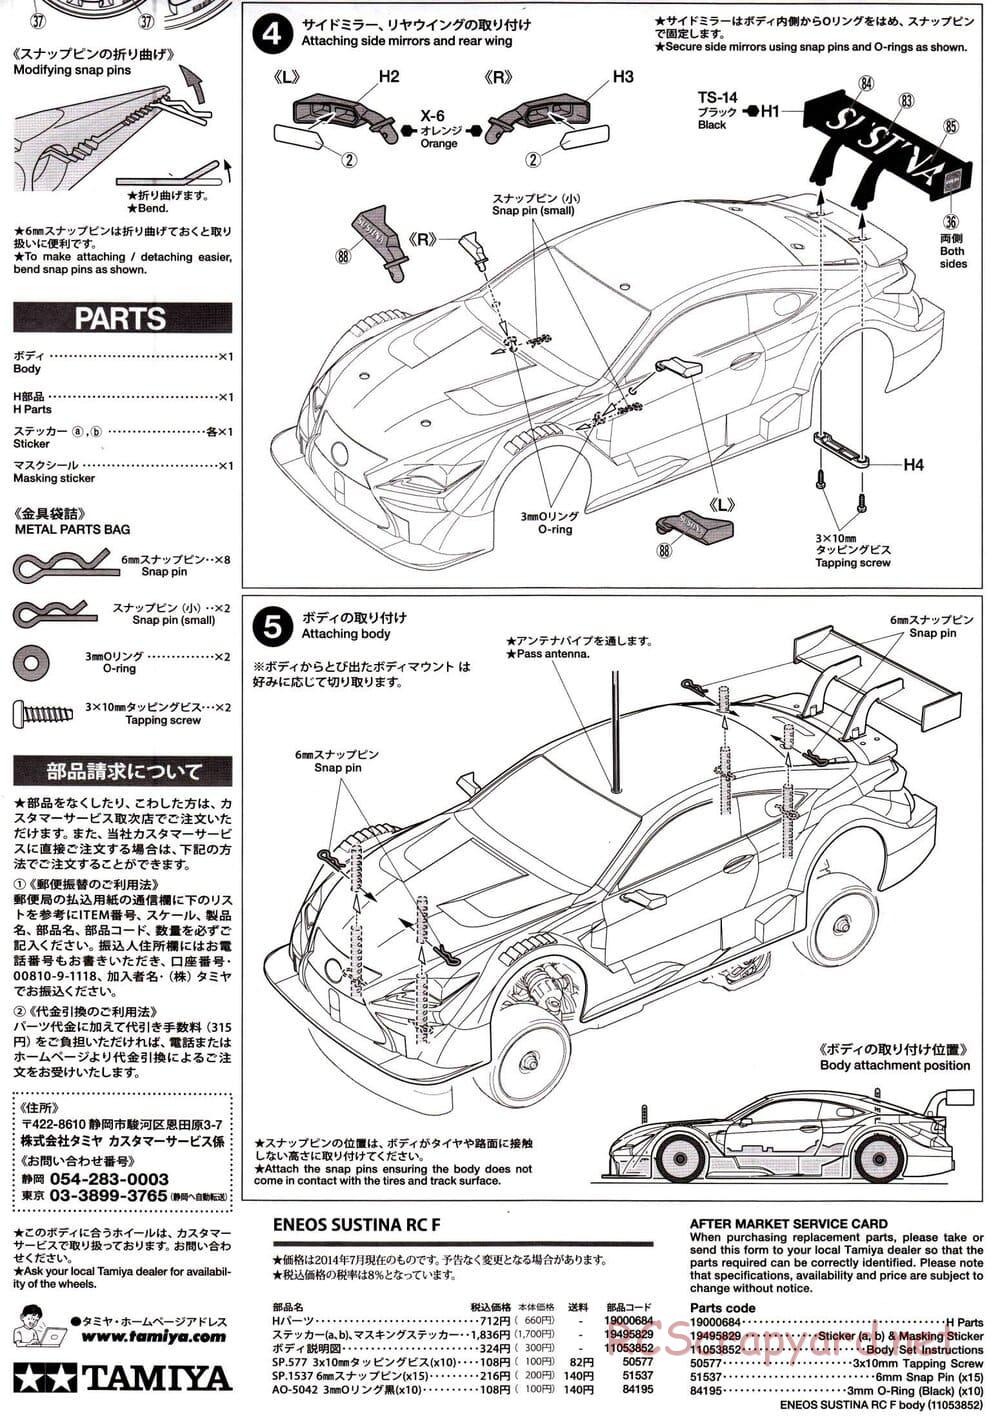 Tamiya - Eneos Sustina RC-F - TB-04 Chassis - Body Manual - Page 5